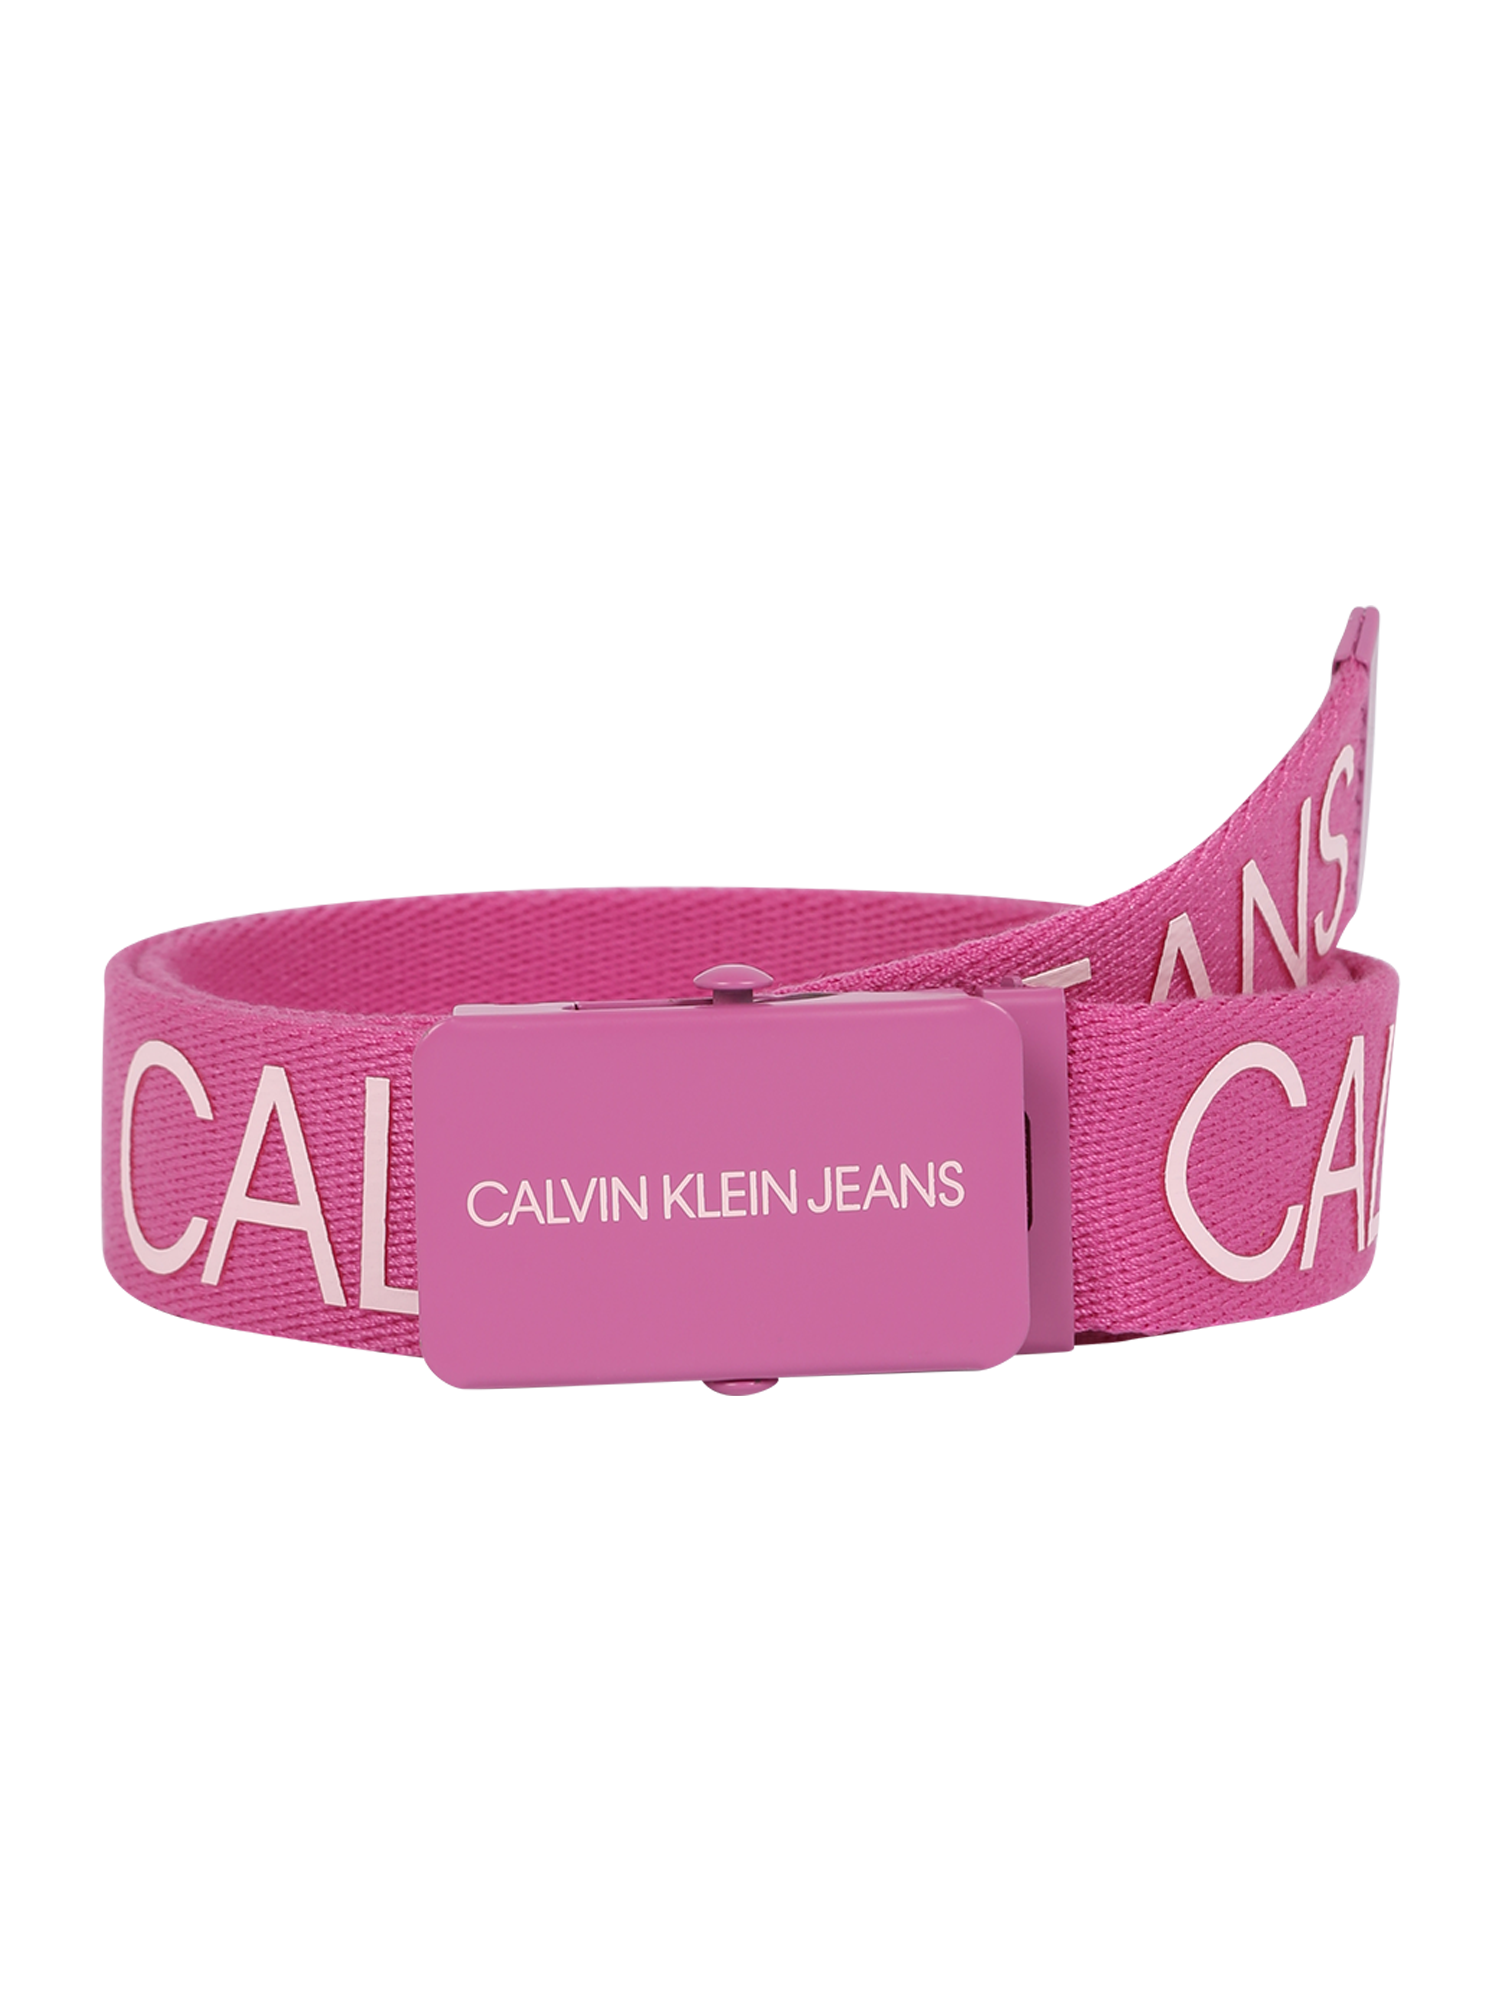 Bimba Bambini Calvin Klein Jeans Cintura in Rosa 